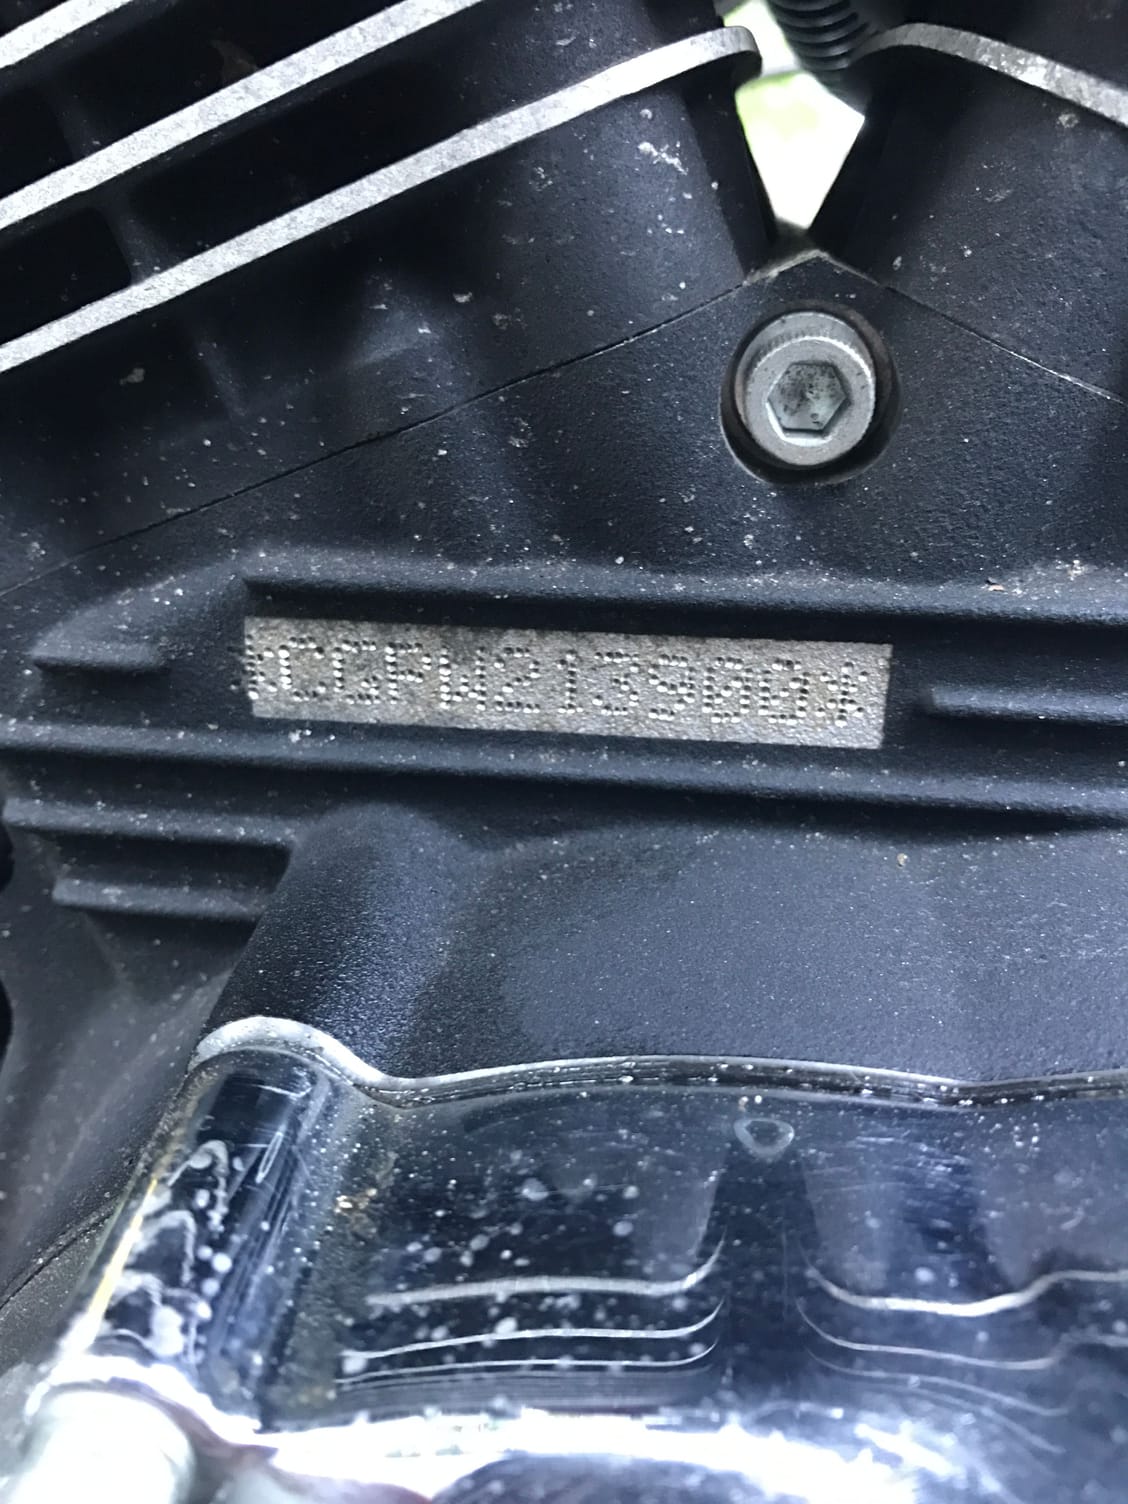 harley engine serial numbers